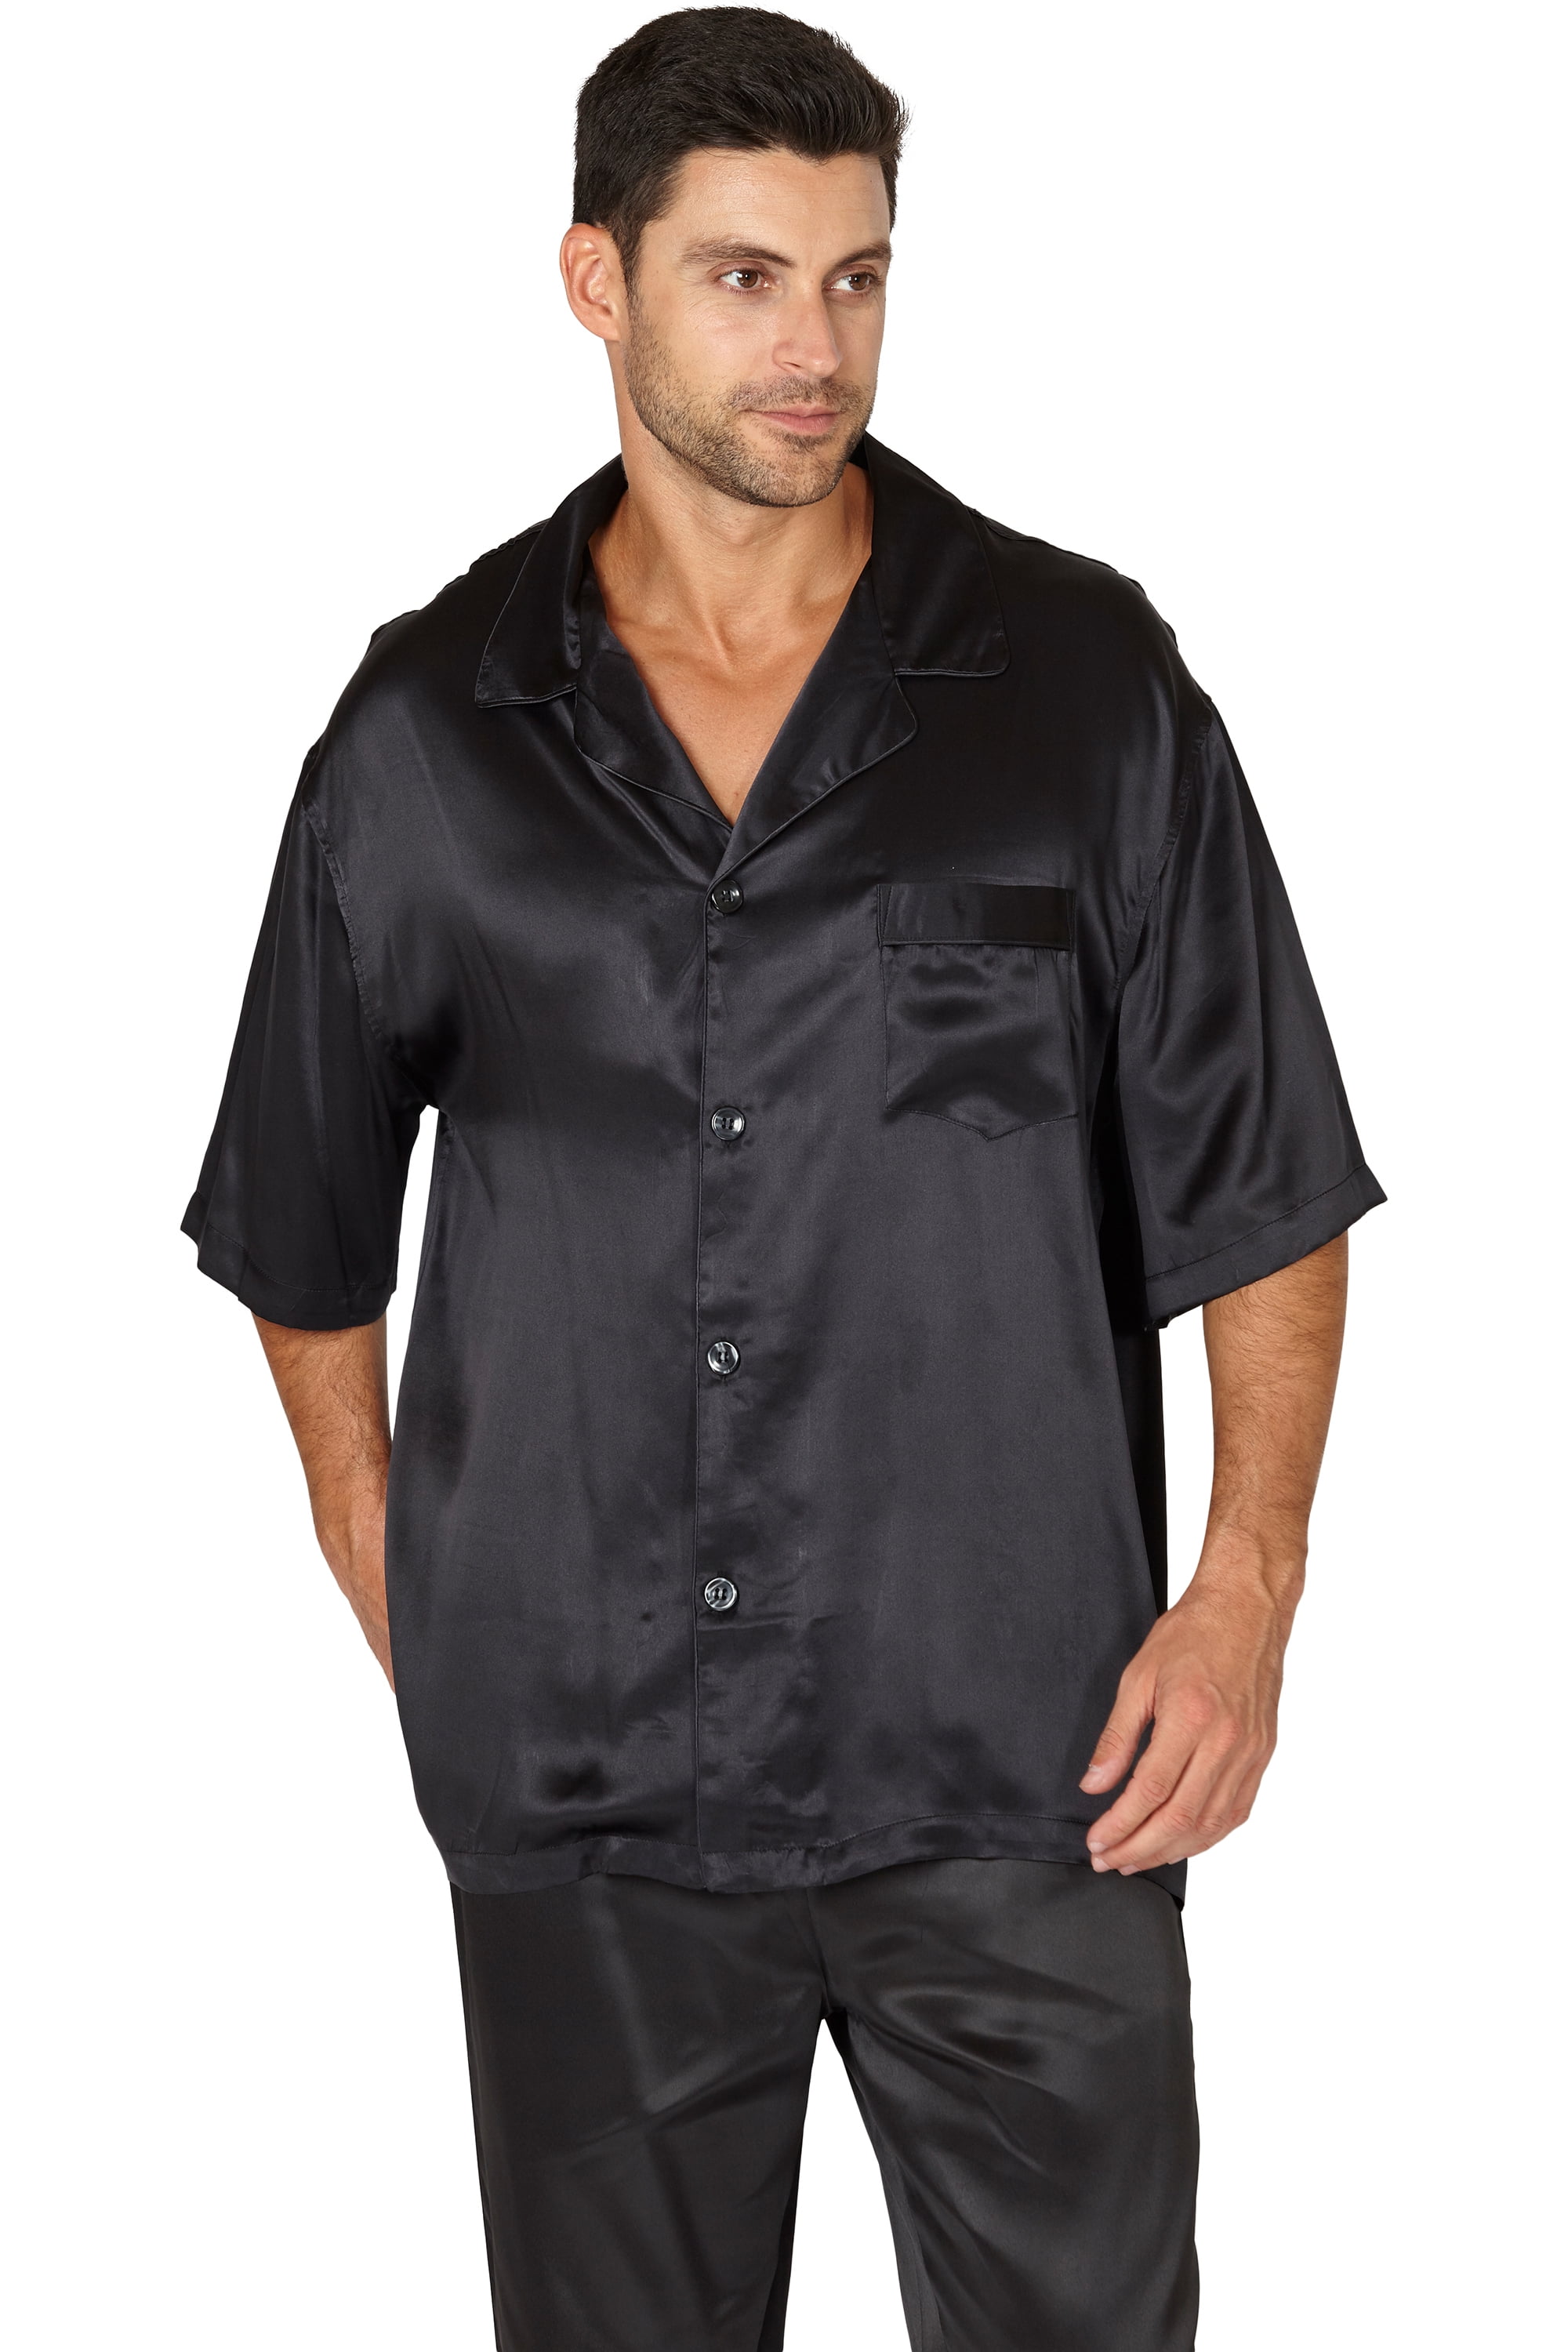 Intimo Mens Silk Charmeuse Pajama Sleep Top, Black, Medium - Walmart.com